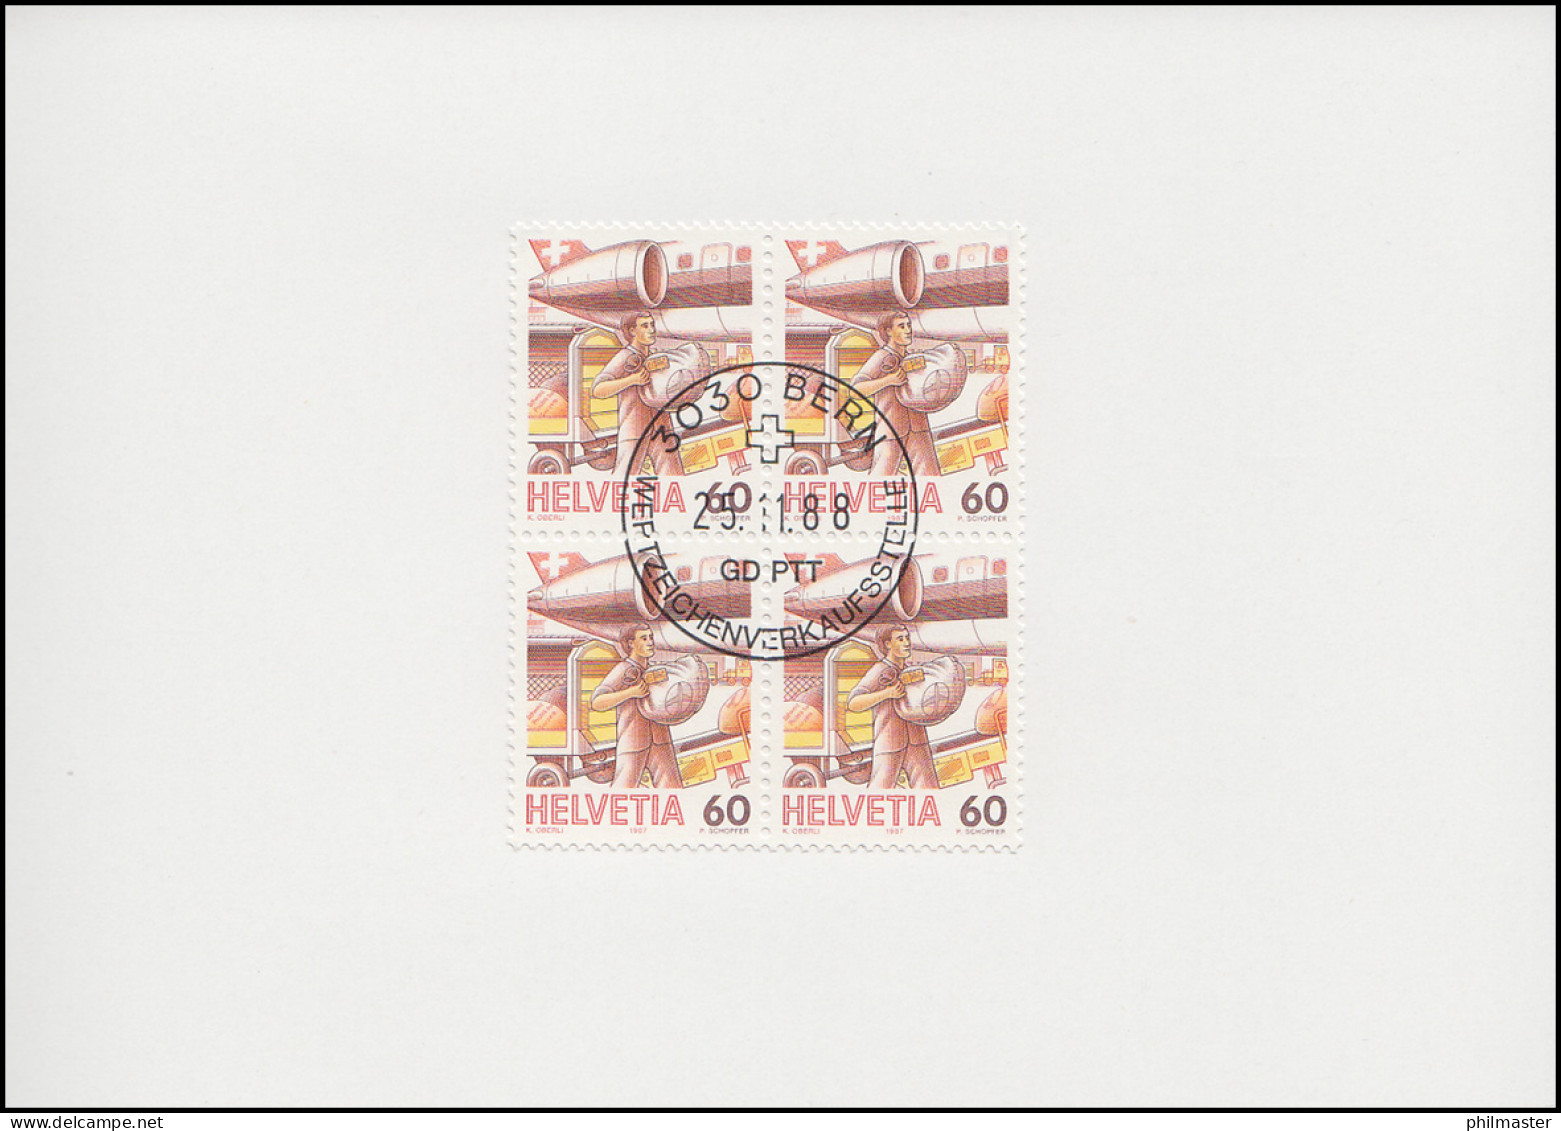 Schweiz 1344 Luftpost / Flugpostverladung 1988, PTT-Grußkarte Zum Jahreswechsel - Maximum Cards